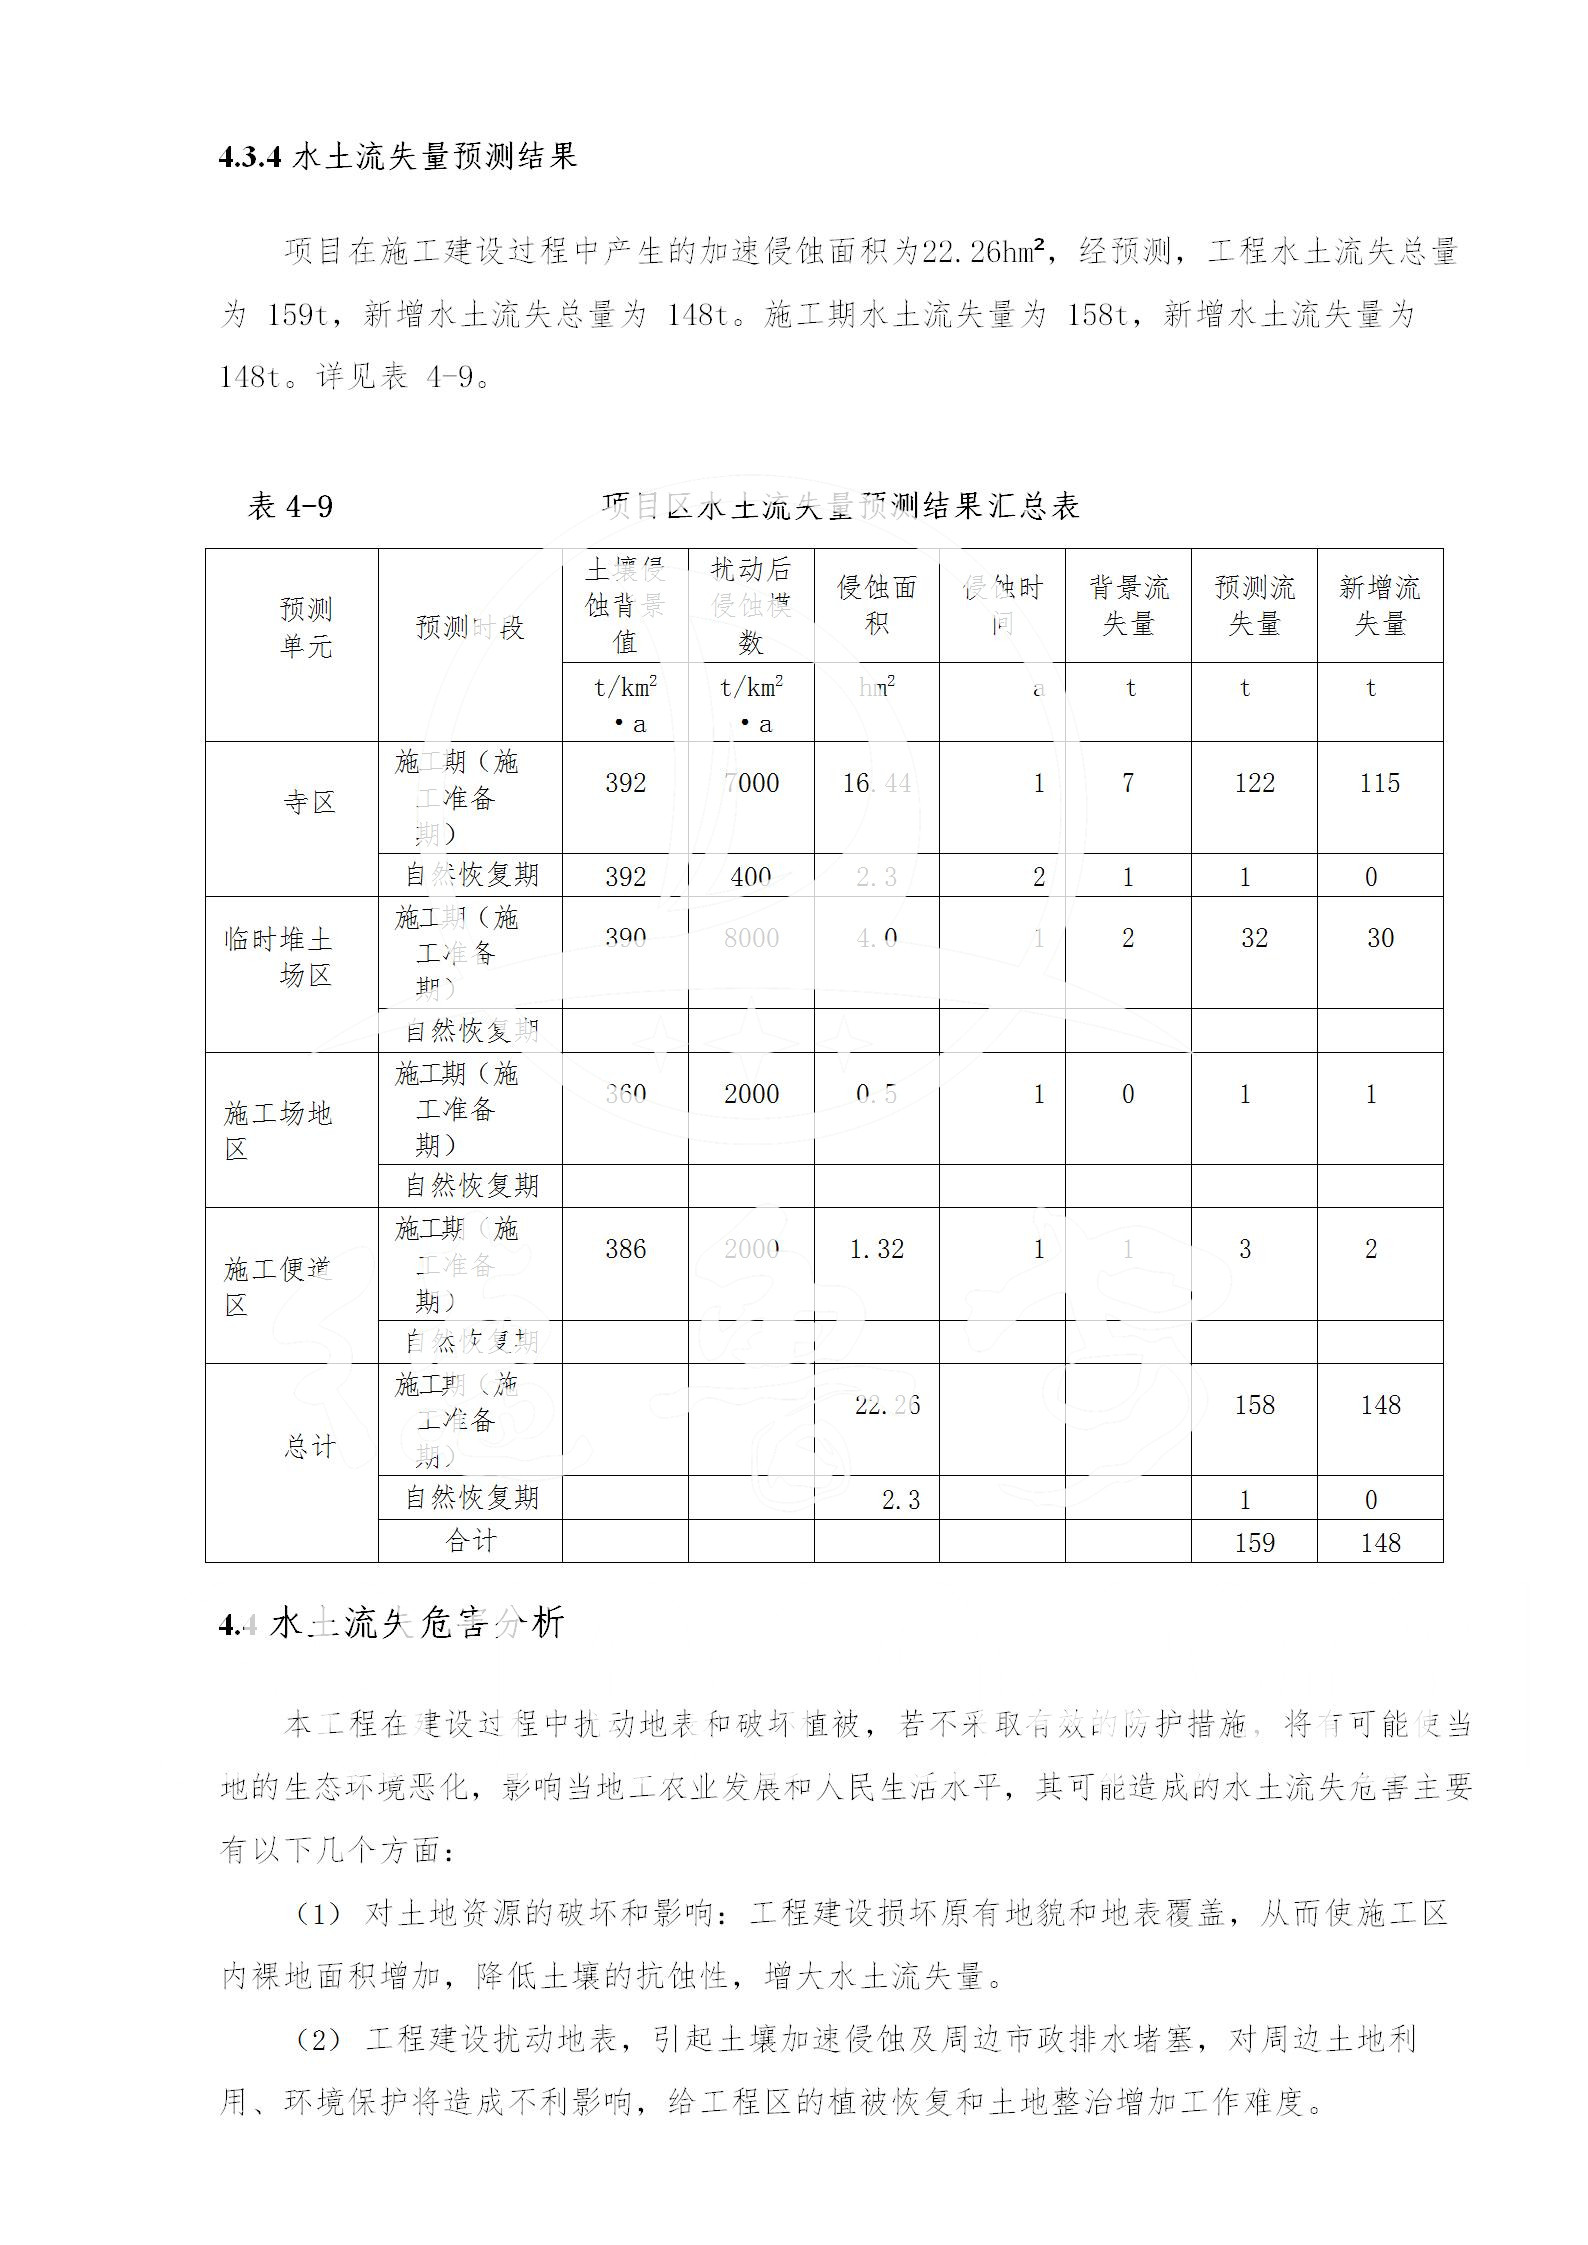 广东省大圣寺水土保持报告  修改稿5_51.jpg